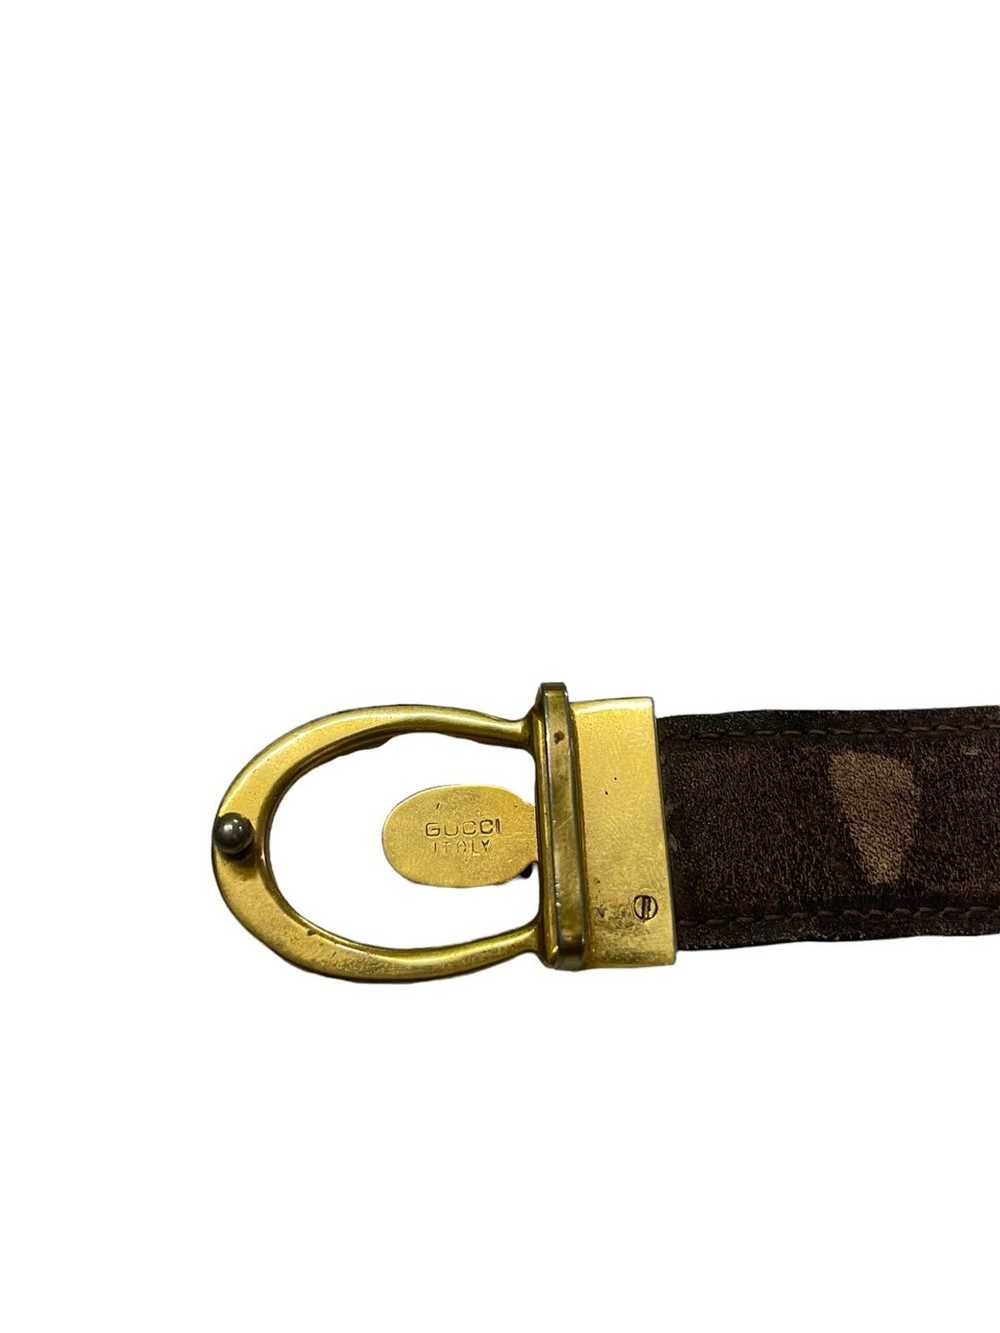 Gucci × Vintage Vintage Gucci Belt Leather - image 4